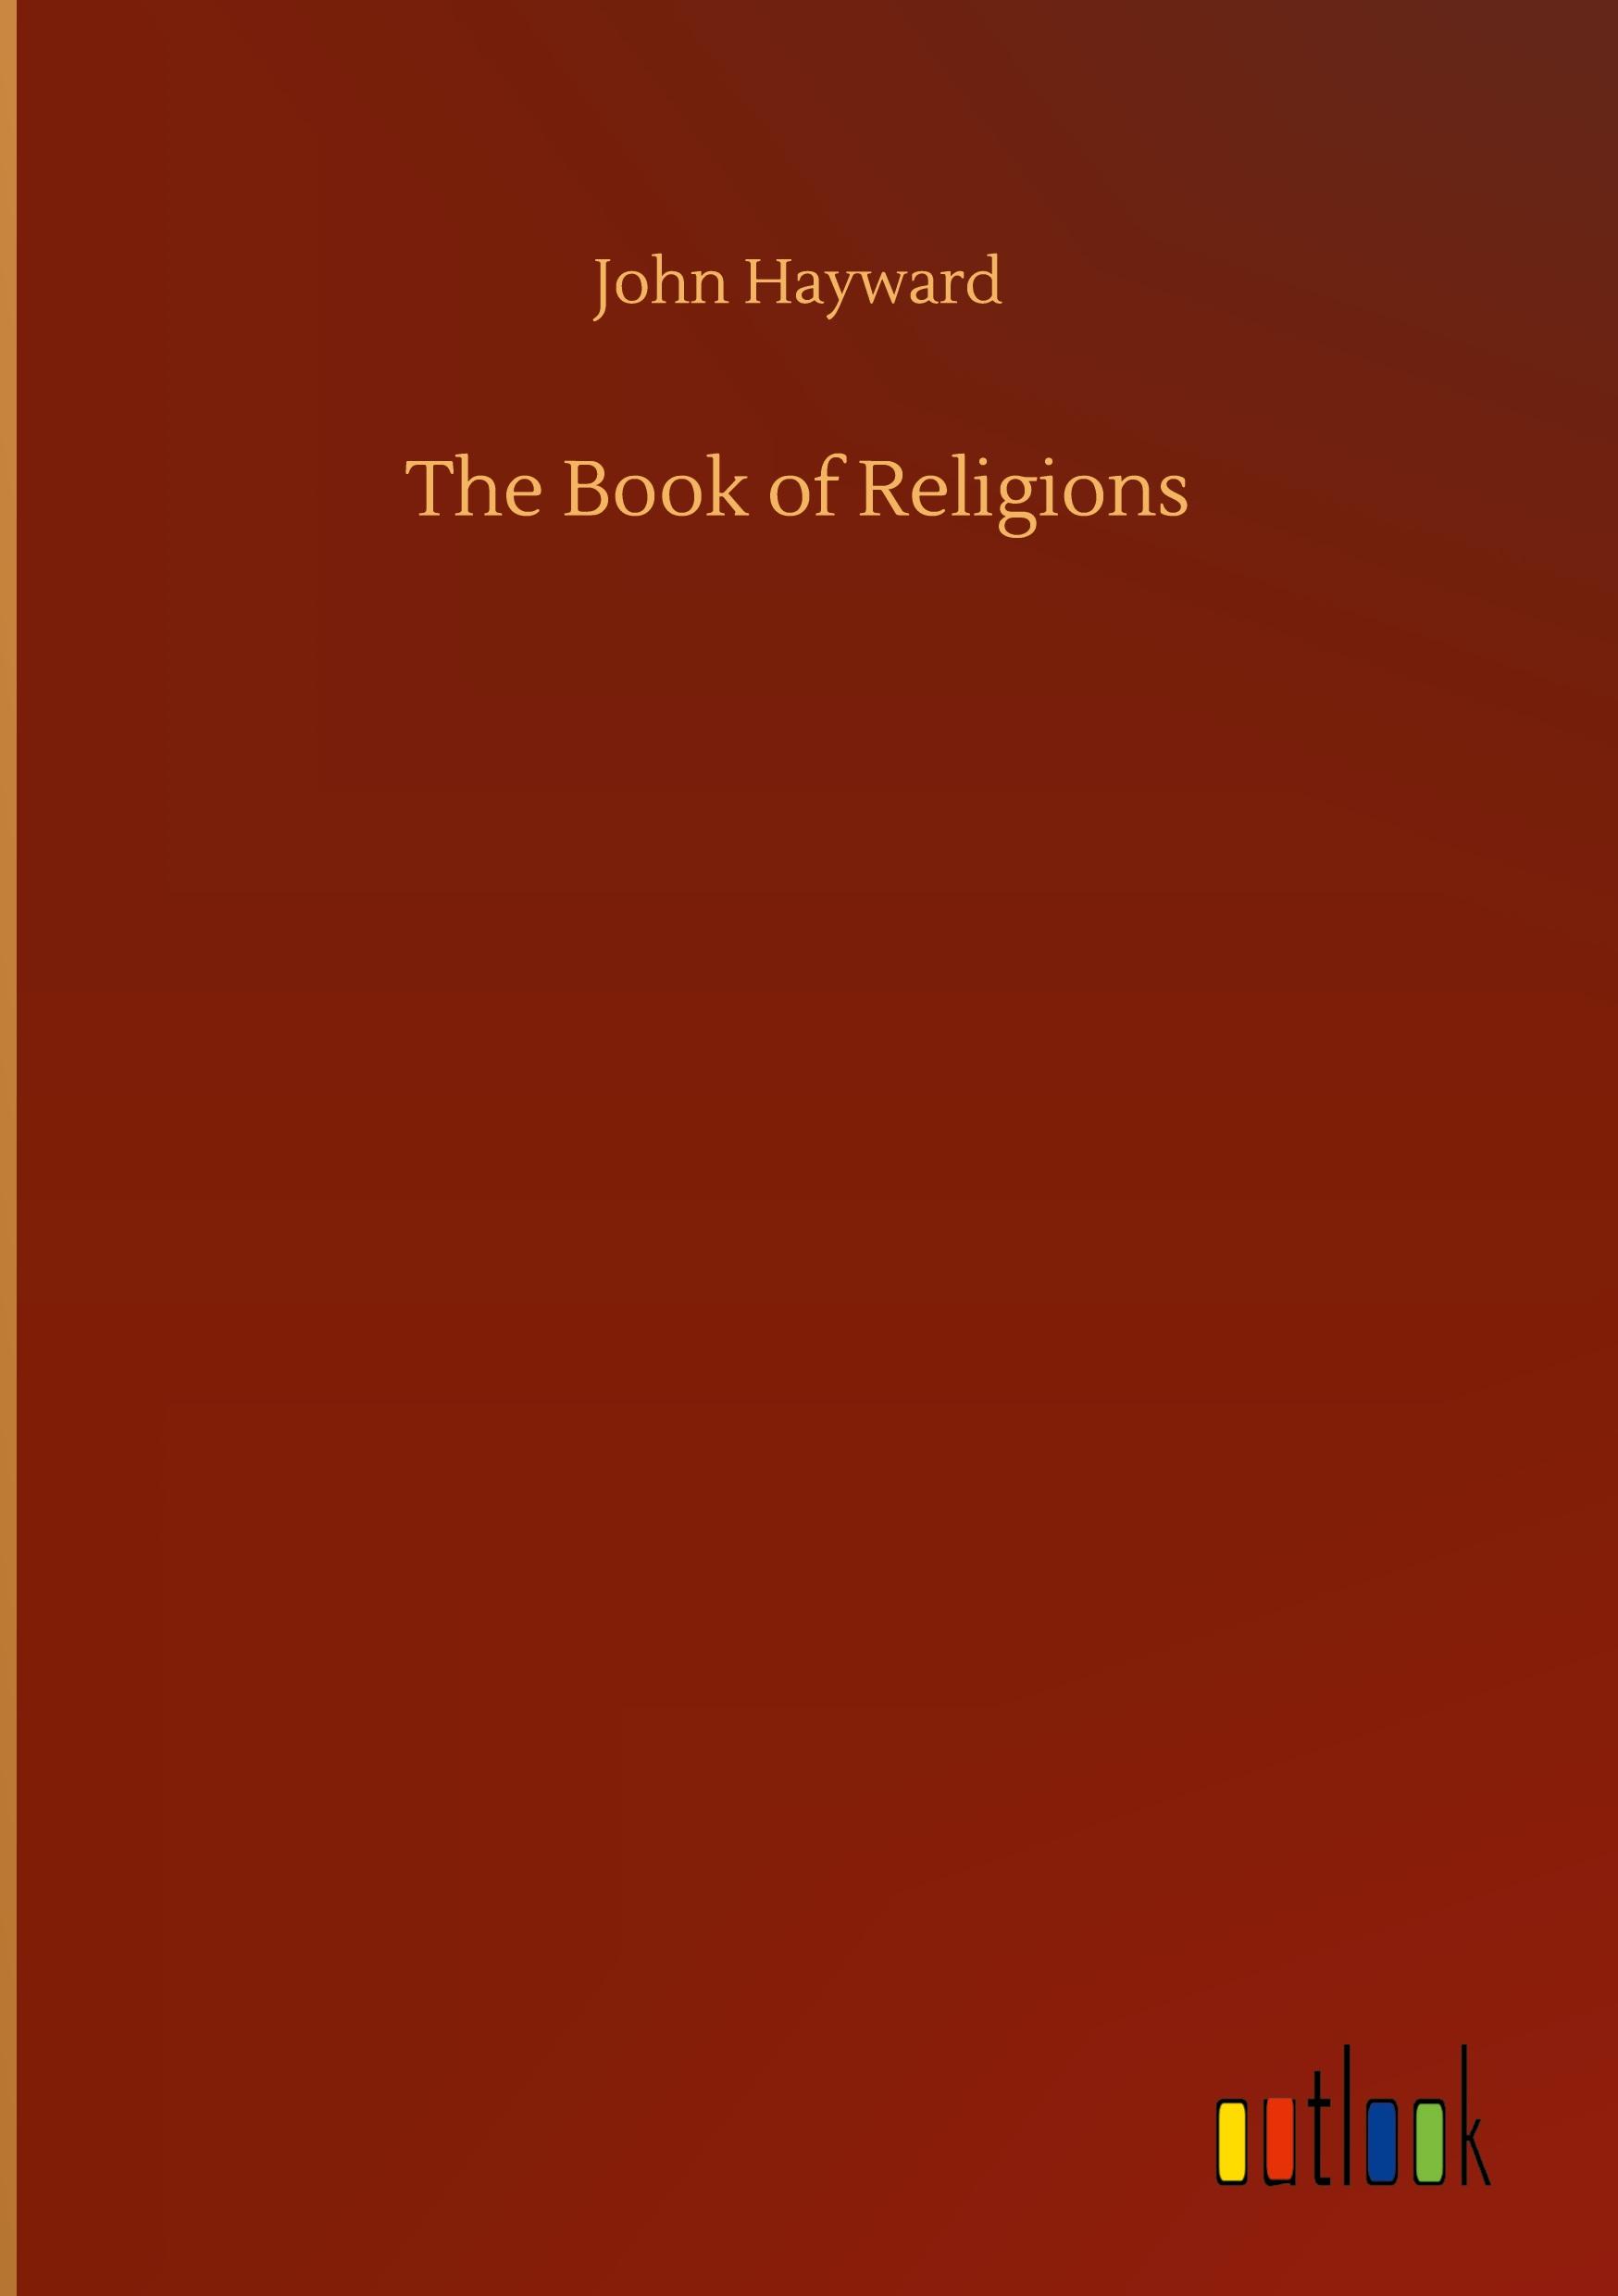 The Book of Religions - Hayward, John